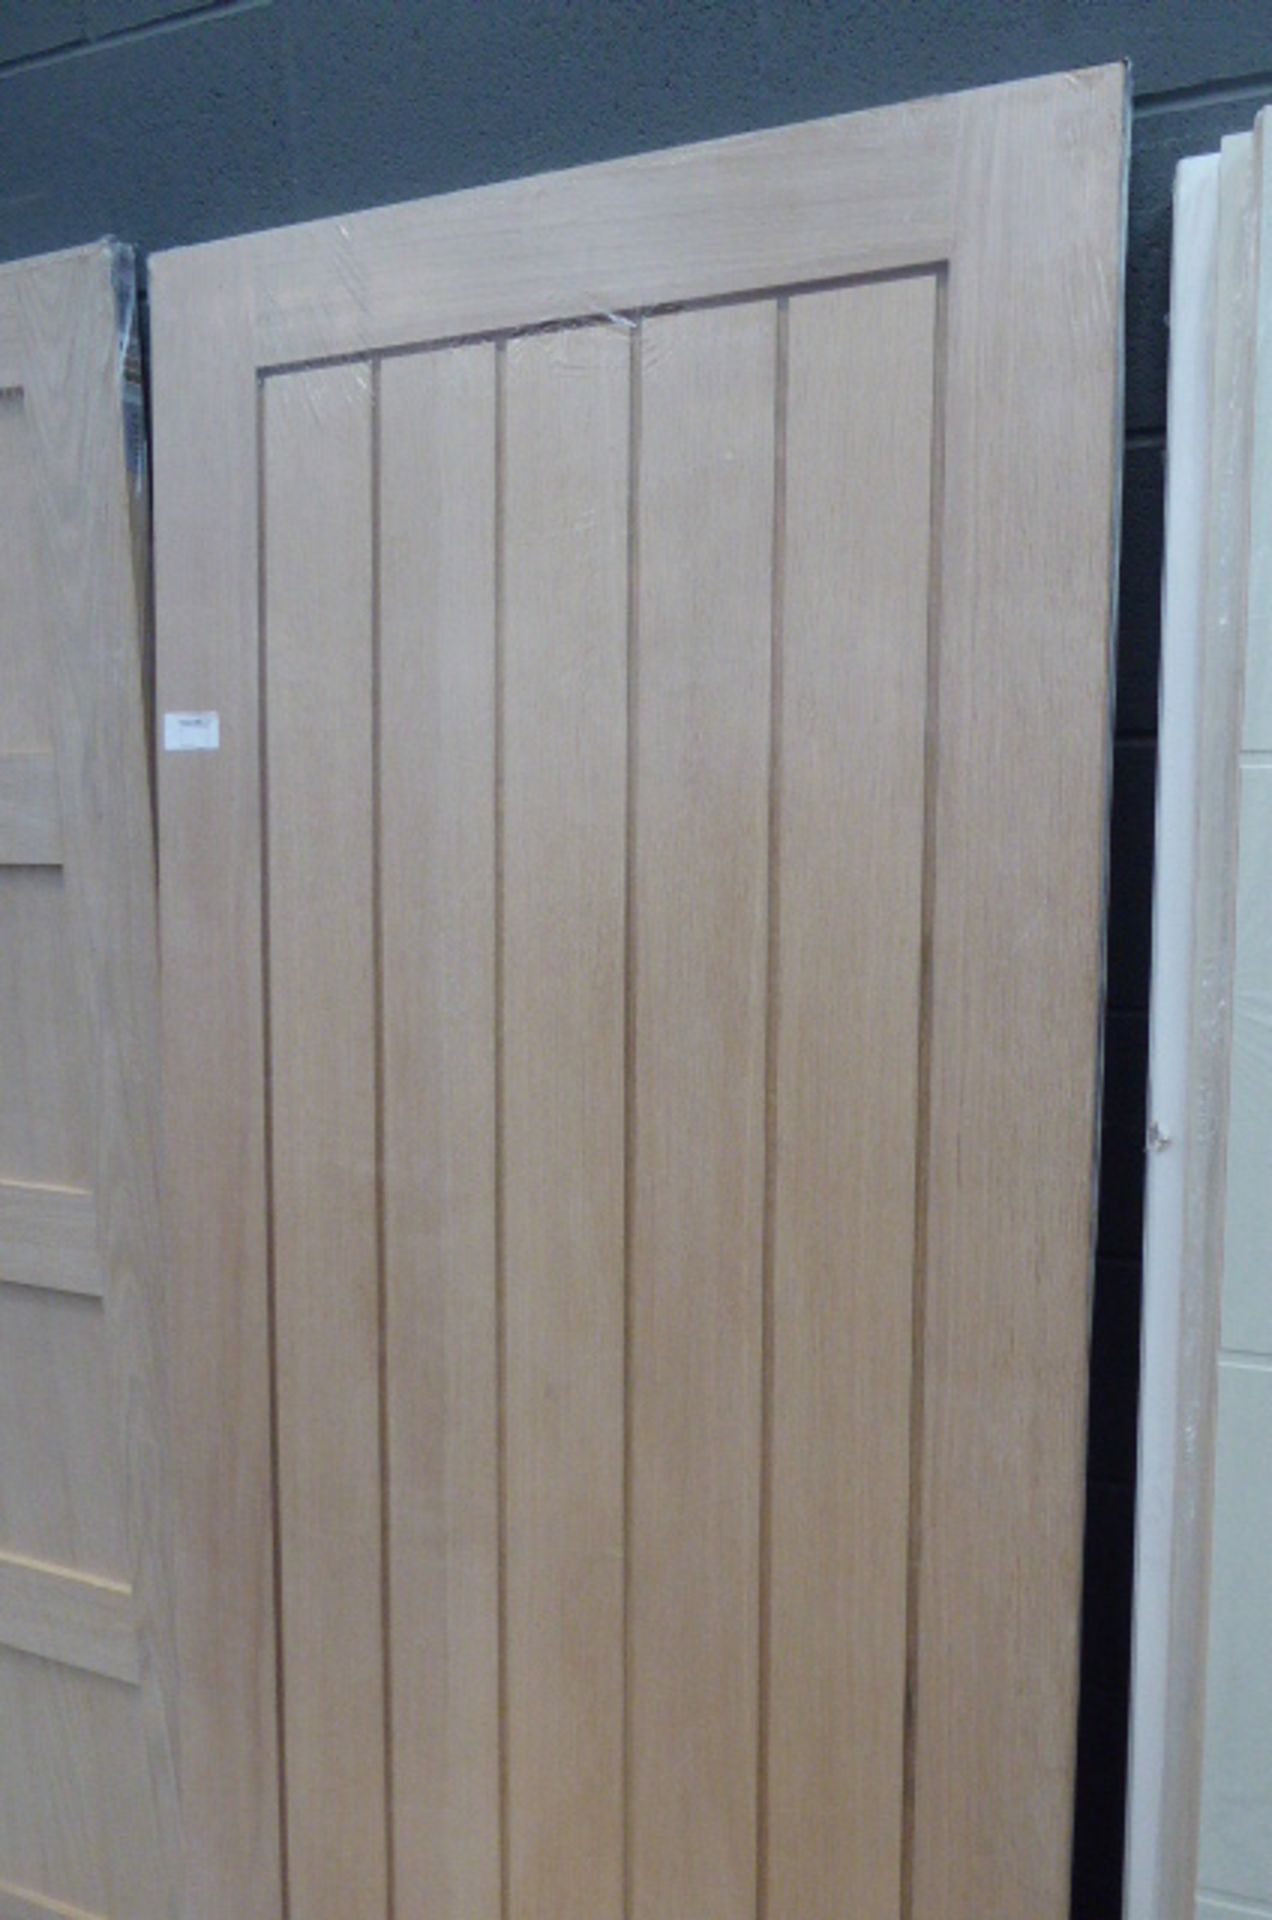 3 oak veneer panel internal doors - Image 3 of 3